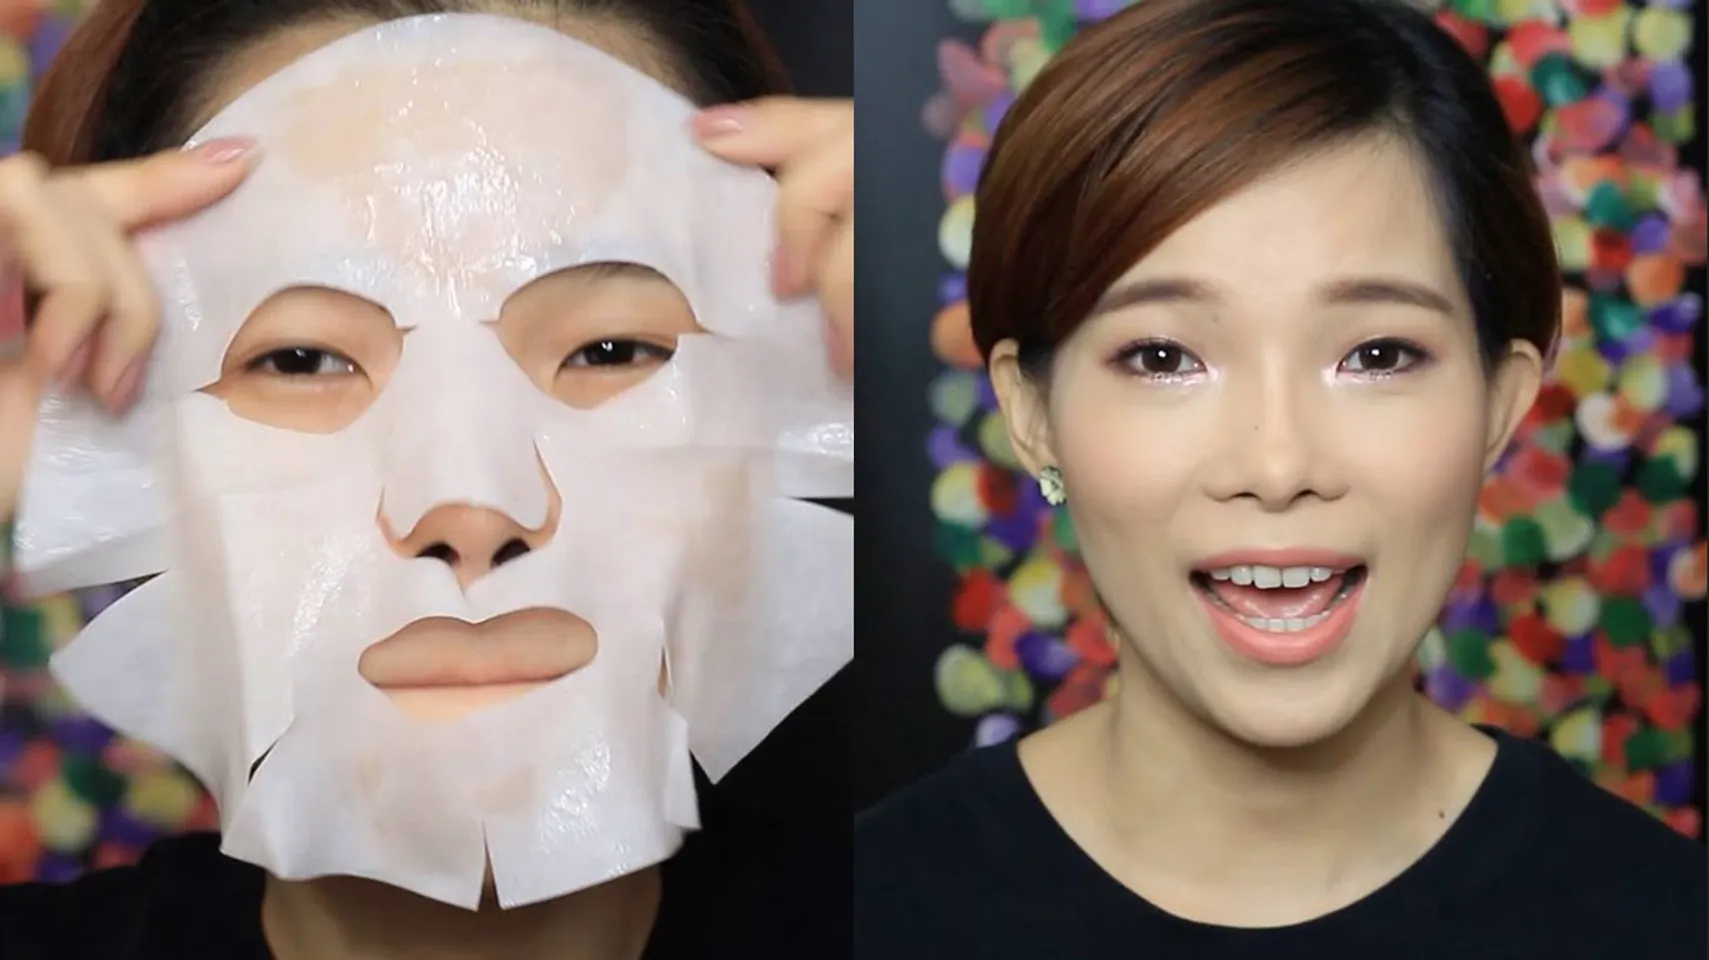 SK II Facial Treatment Mask là loại mặt nạ được làm từ 100% cotton với hoạt chất Pitera giúp hồi sinh và tái tạo da